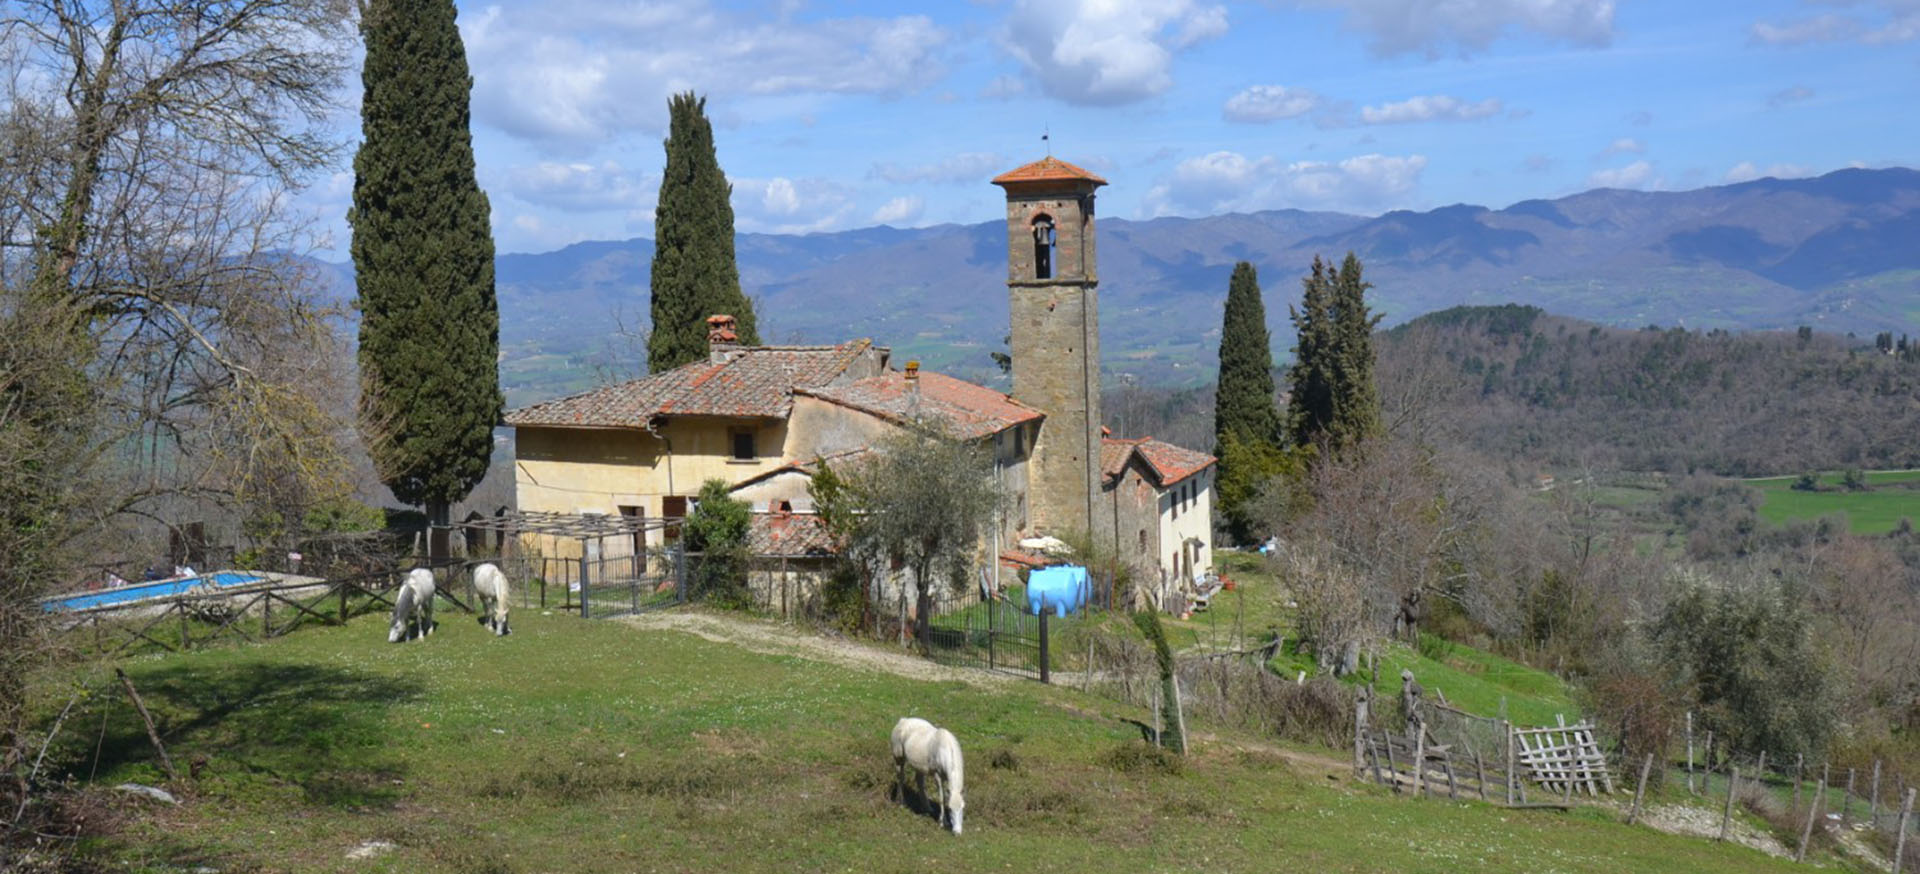 B Guide - Visite Guidate ed Escursioni in Toscana